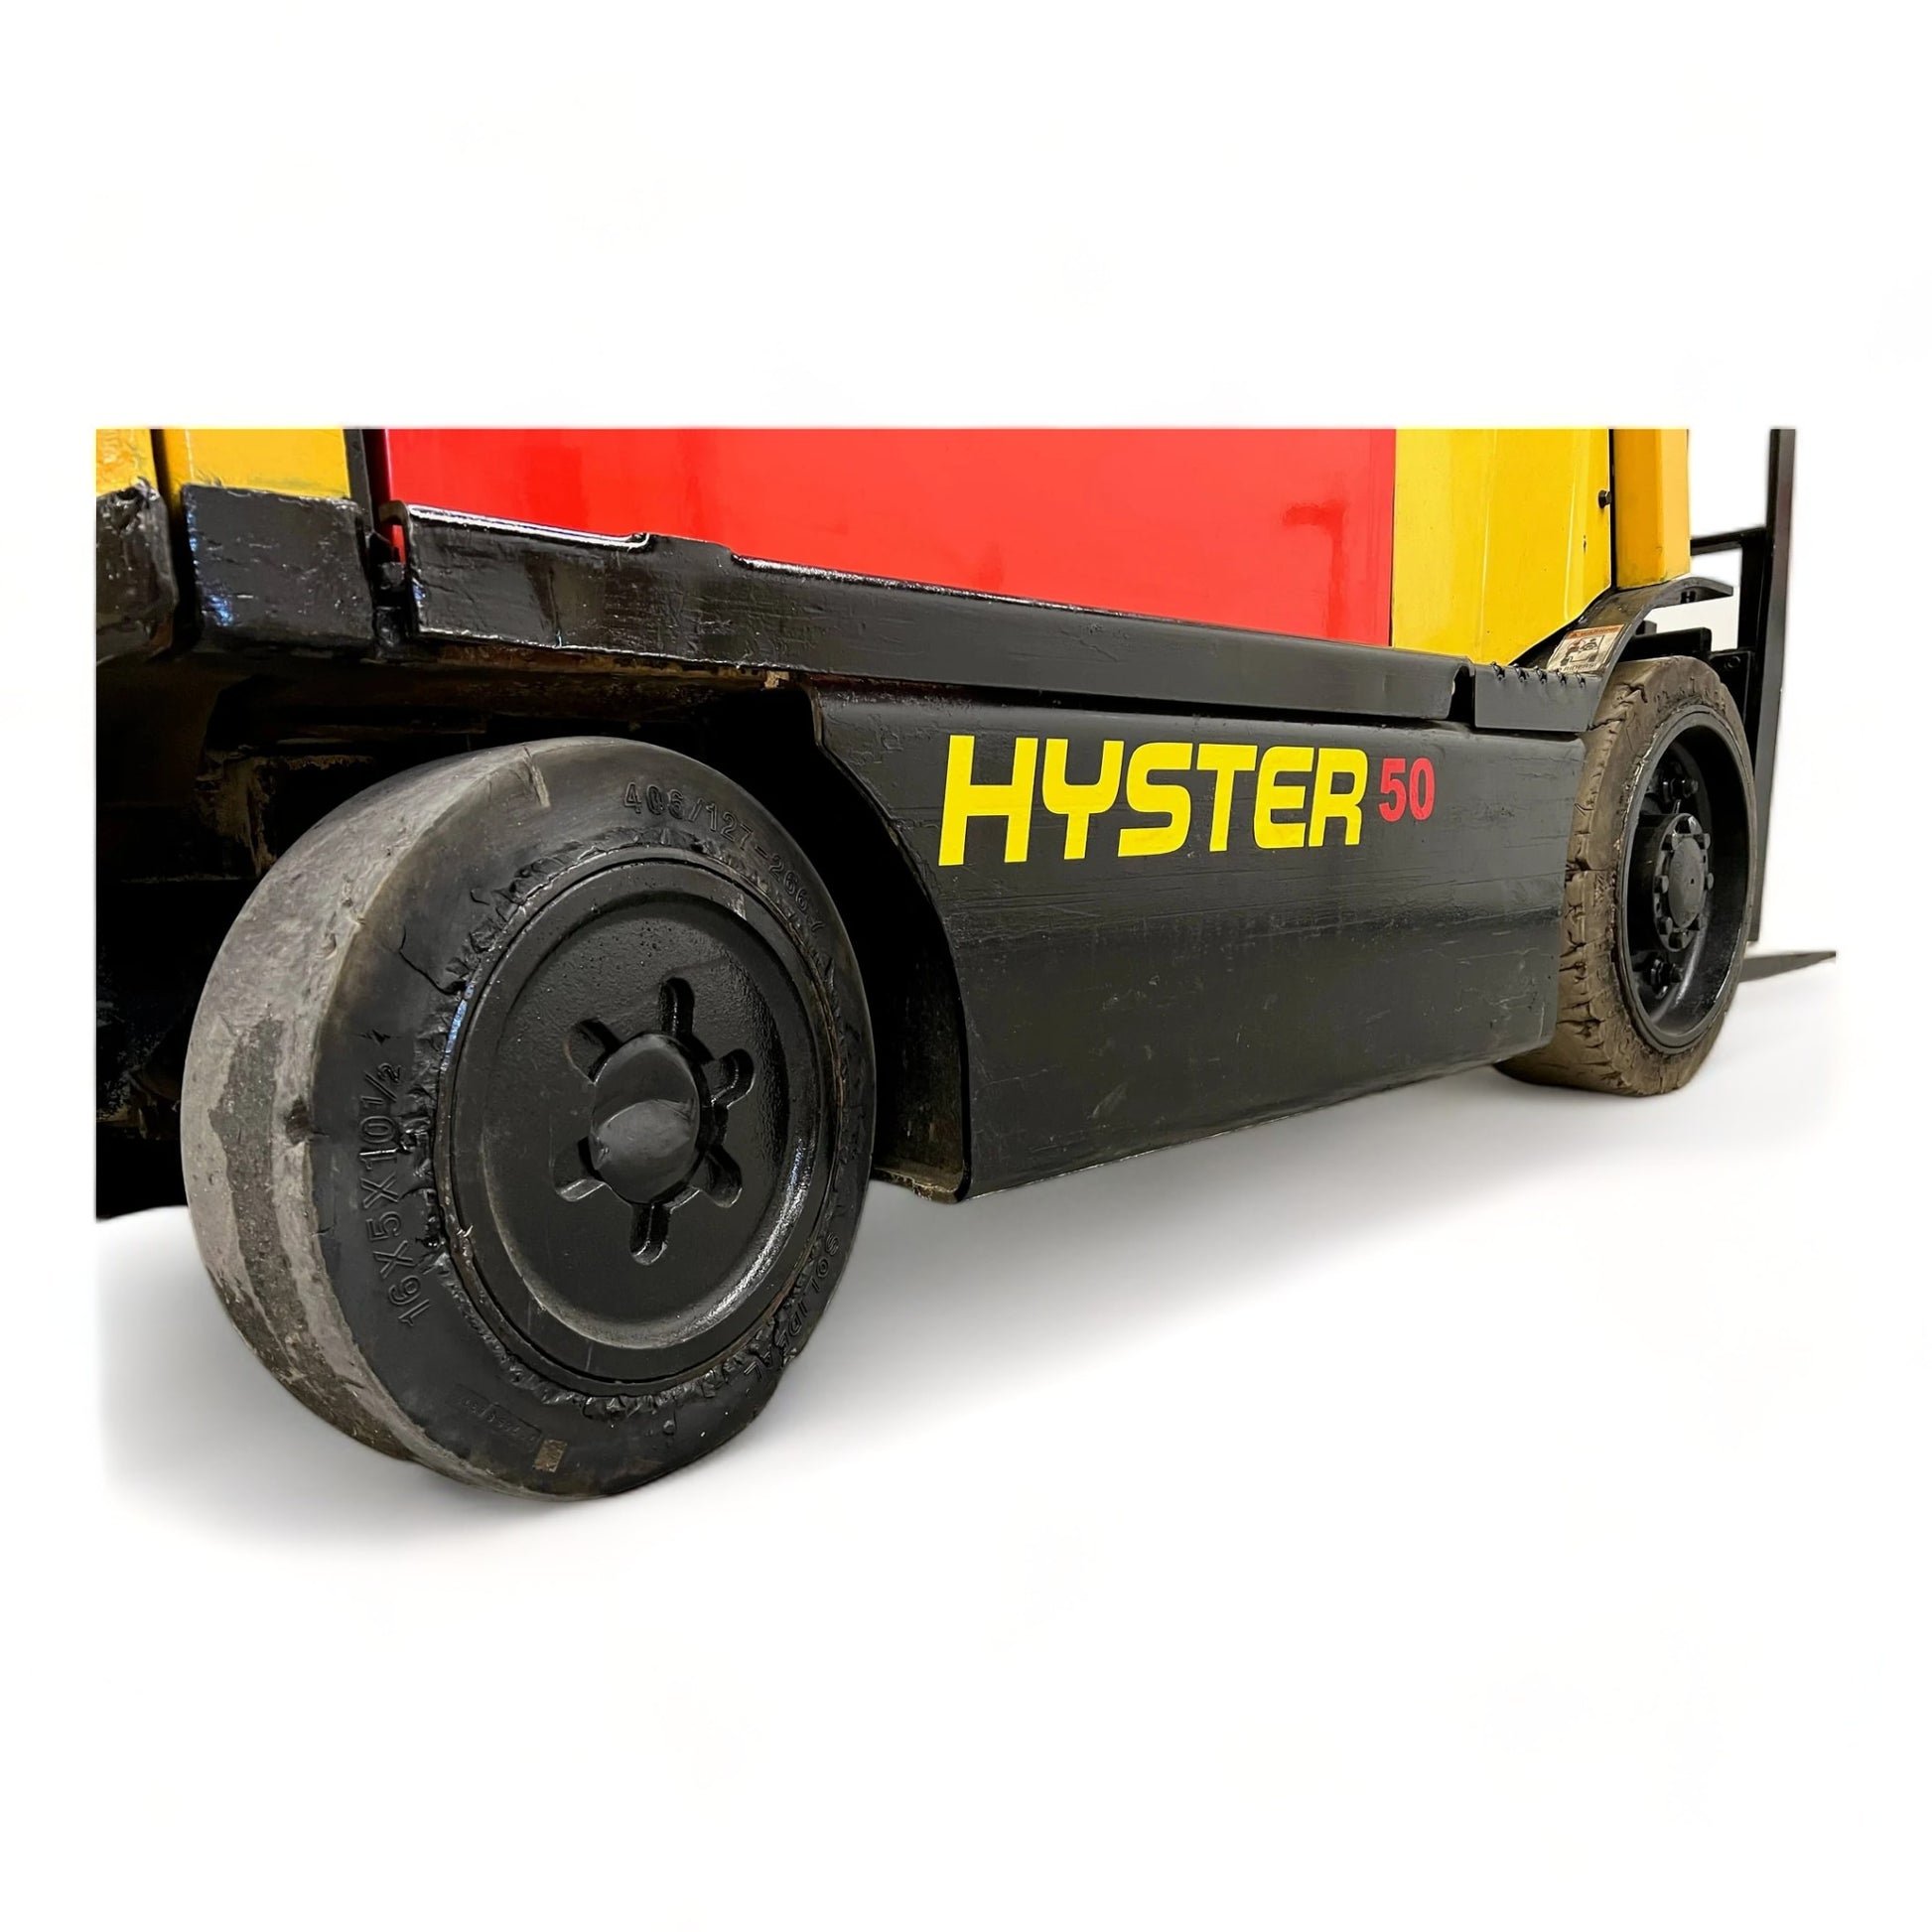 Chariot élévateur électrique Hyster E50XN33 5000 lbs + capacité 189''